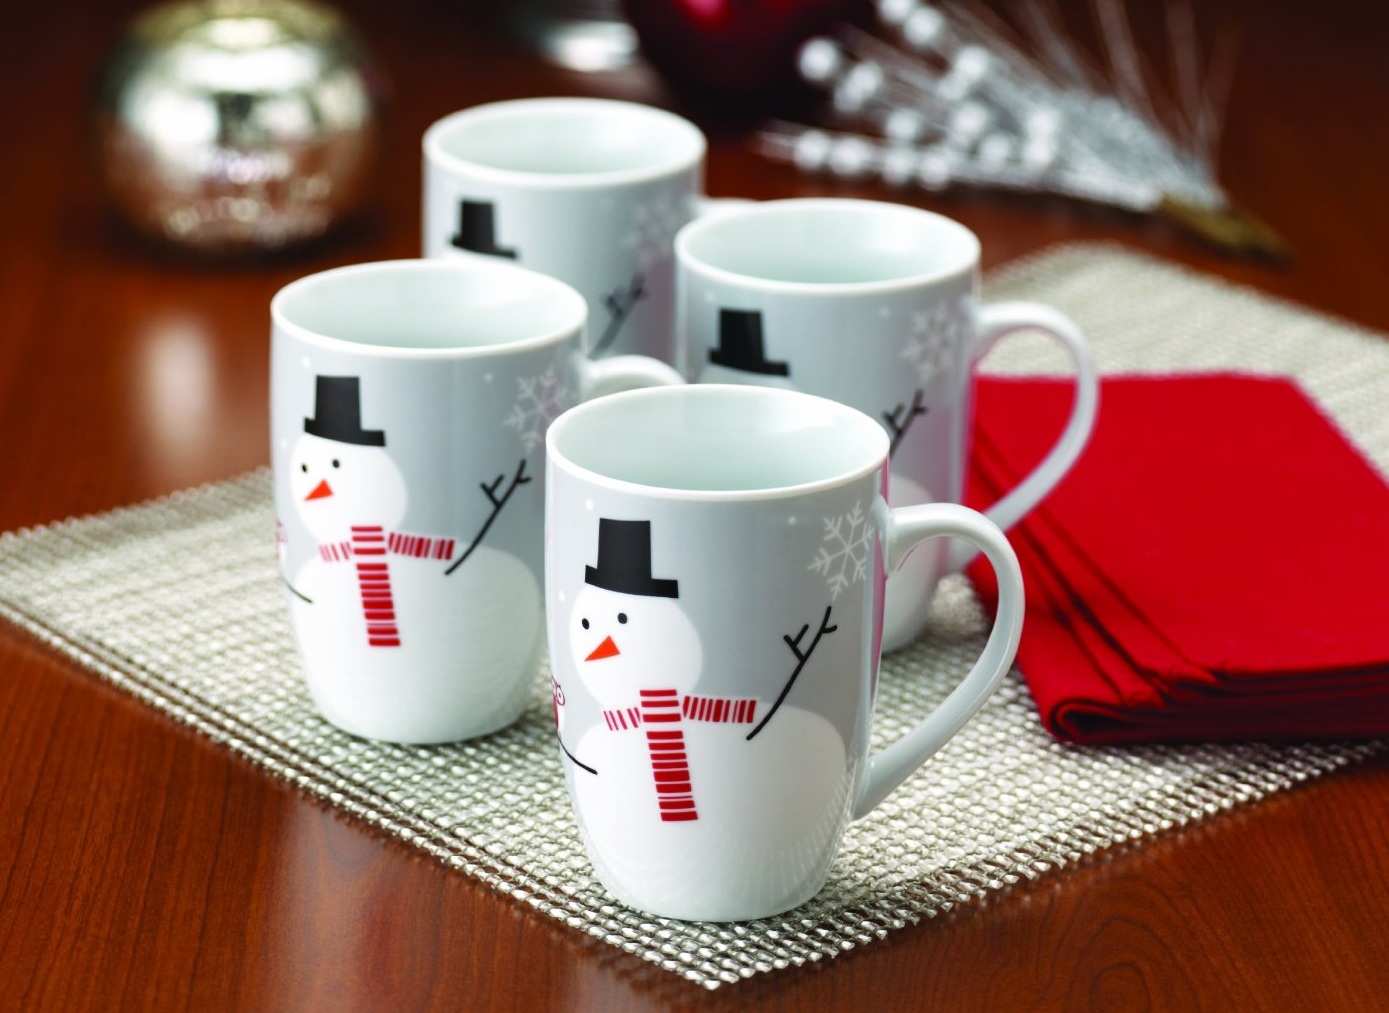 Snowman 4 Mugs Gift Box